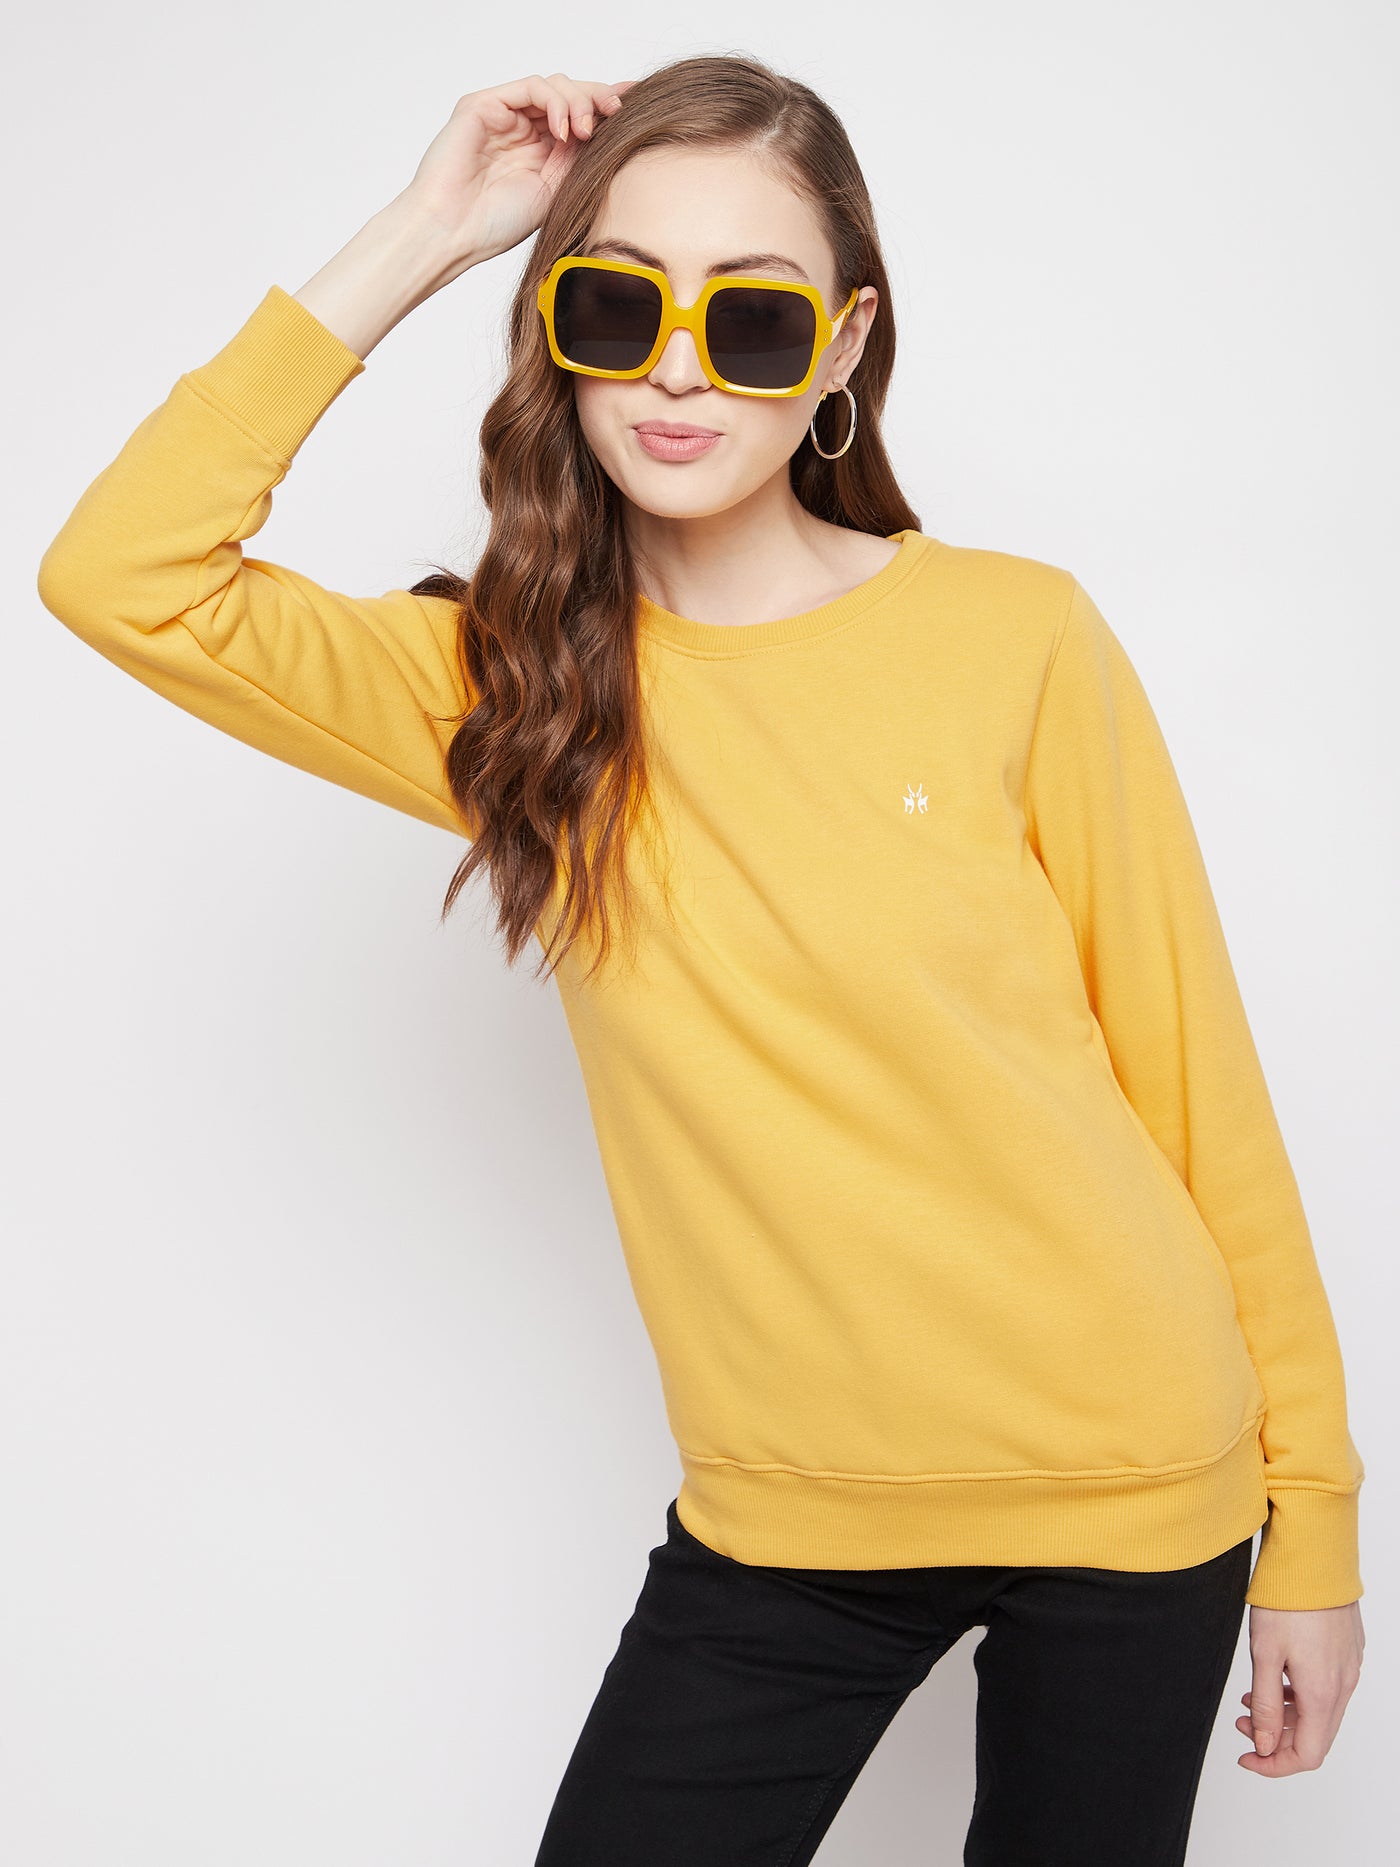 Yellow Round Neck Sweatshirt - Women Sweatshirts